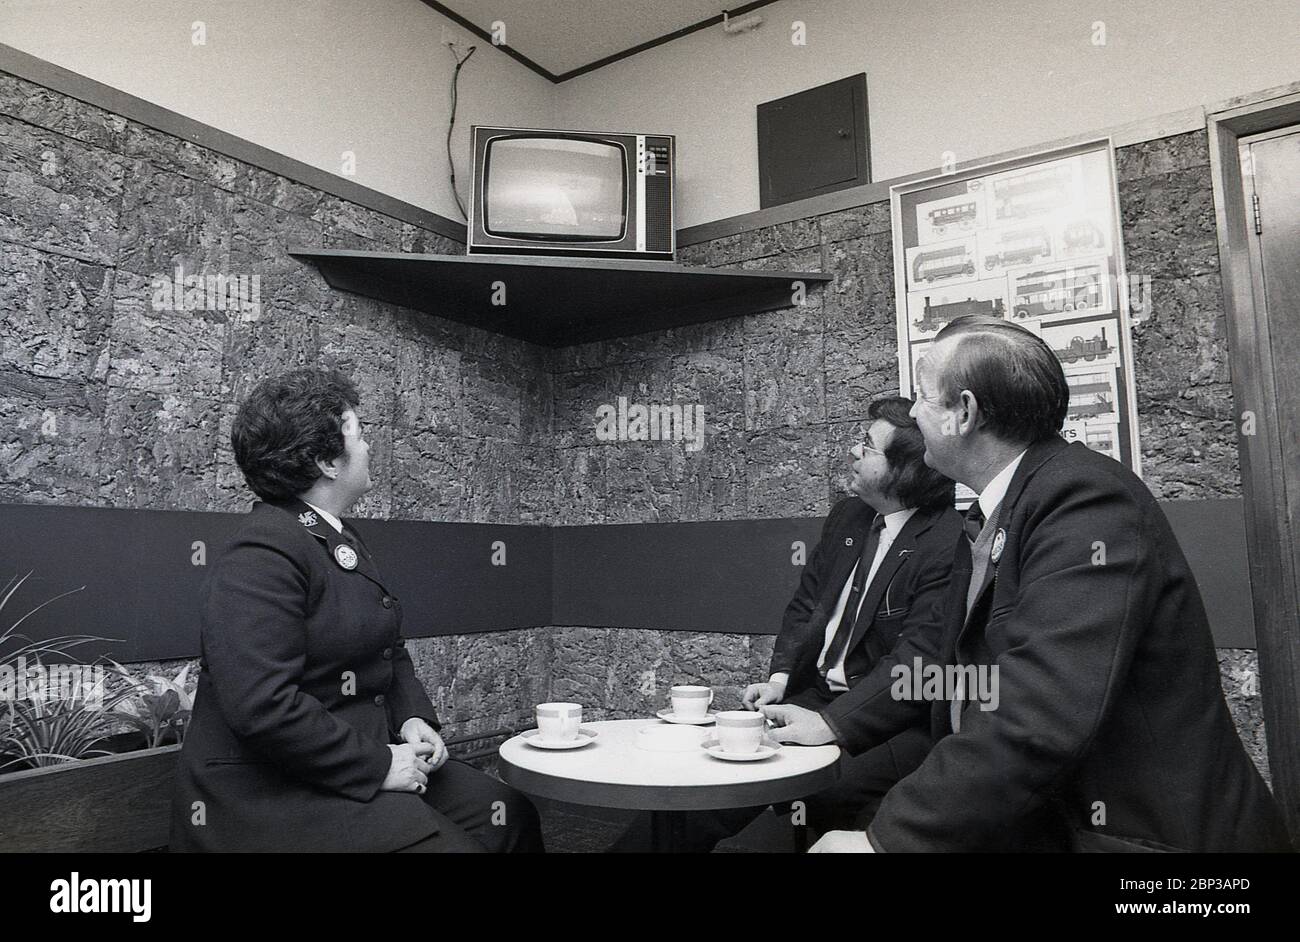 Interno, stanza di riposo del personale dell'autobus New Cross, Londra del sud, Inghilterra, 1974, l'immagine mostra tre membri dell'equipaggio in uniforme che hanno una pausa e una tazza di tè e che guardano una piccola televisione portatile. Foto Stock